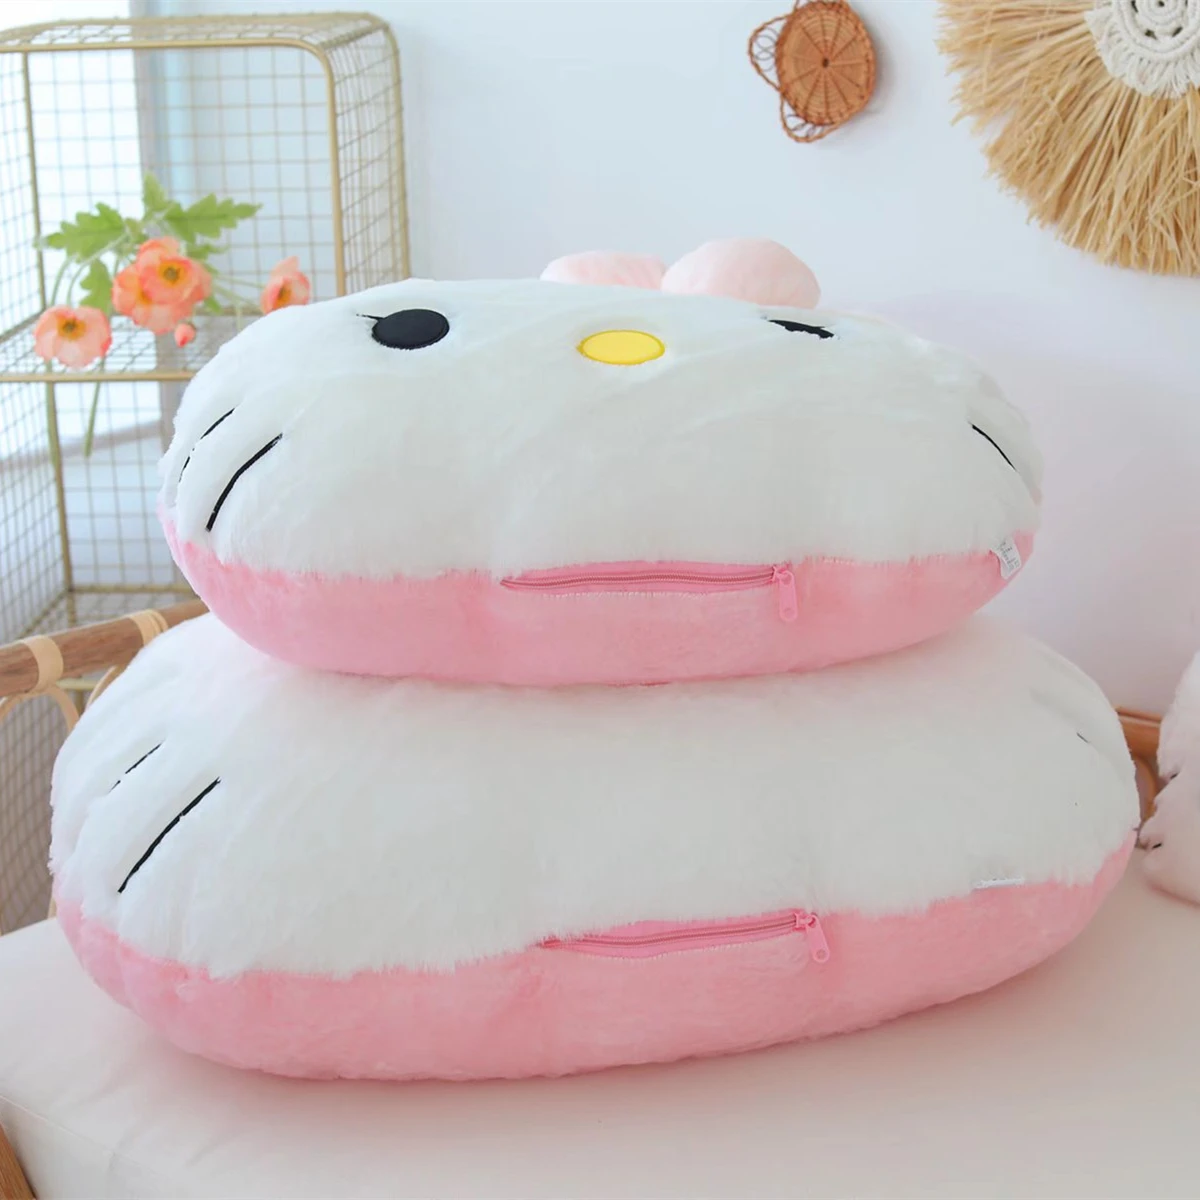 Sanrio hello kitty brinquedo de pelúcia macio fofo travesseiro confortável voltar almofada sofá decorativo travesseiro abraço plushies presentes de natal para a menina